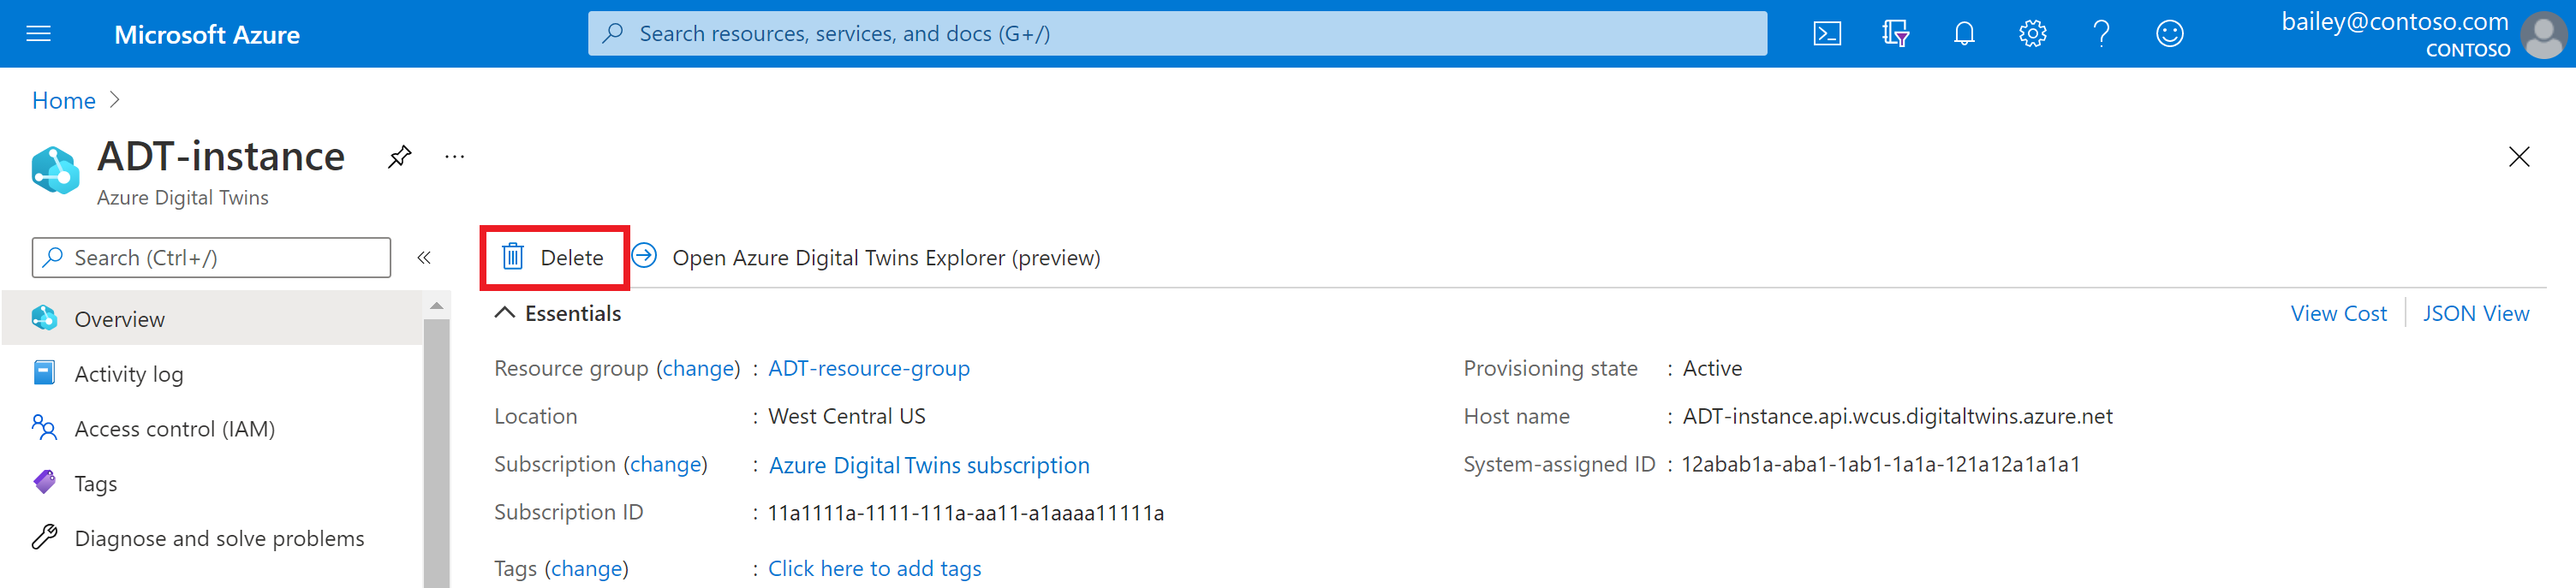 Captura de pantalla de la página de información general de la instancia de Azure Digital Twins en Azure Portal. El botón Eliminar se muestra resaltado.